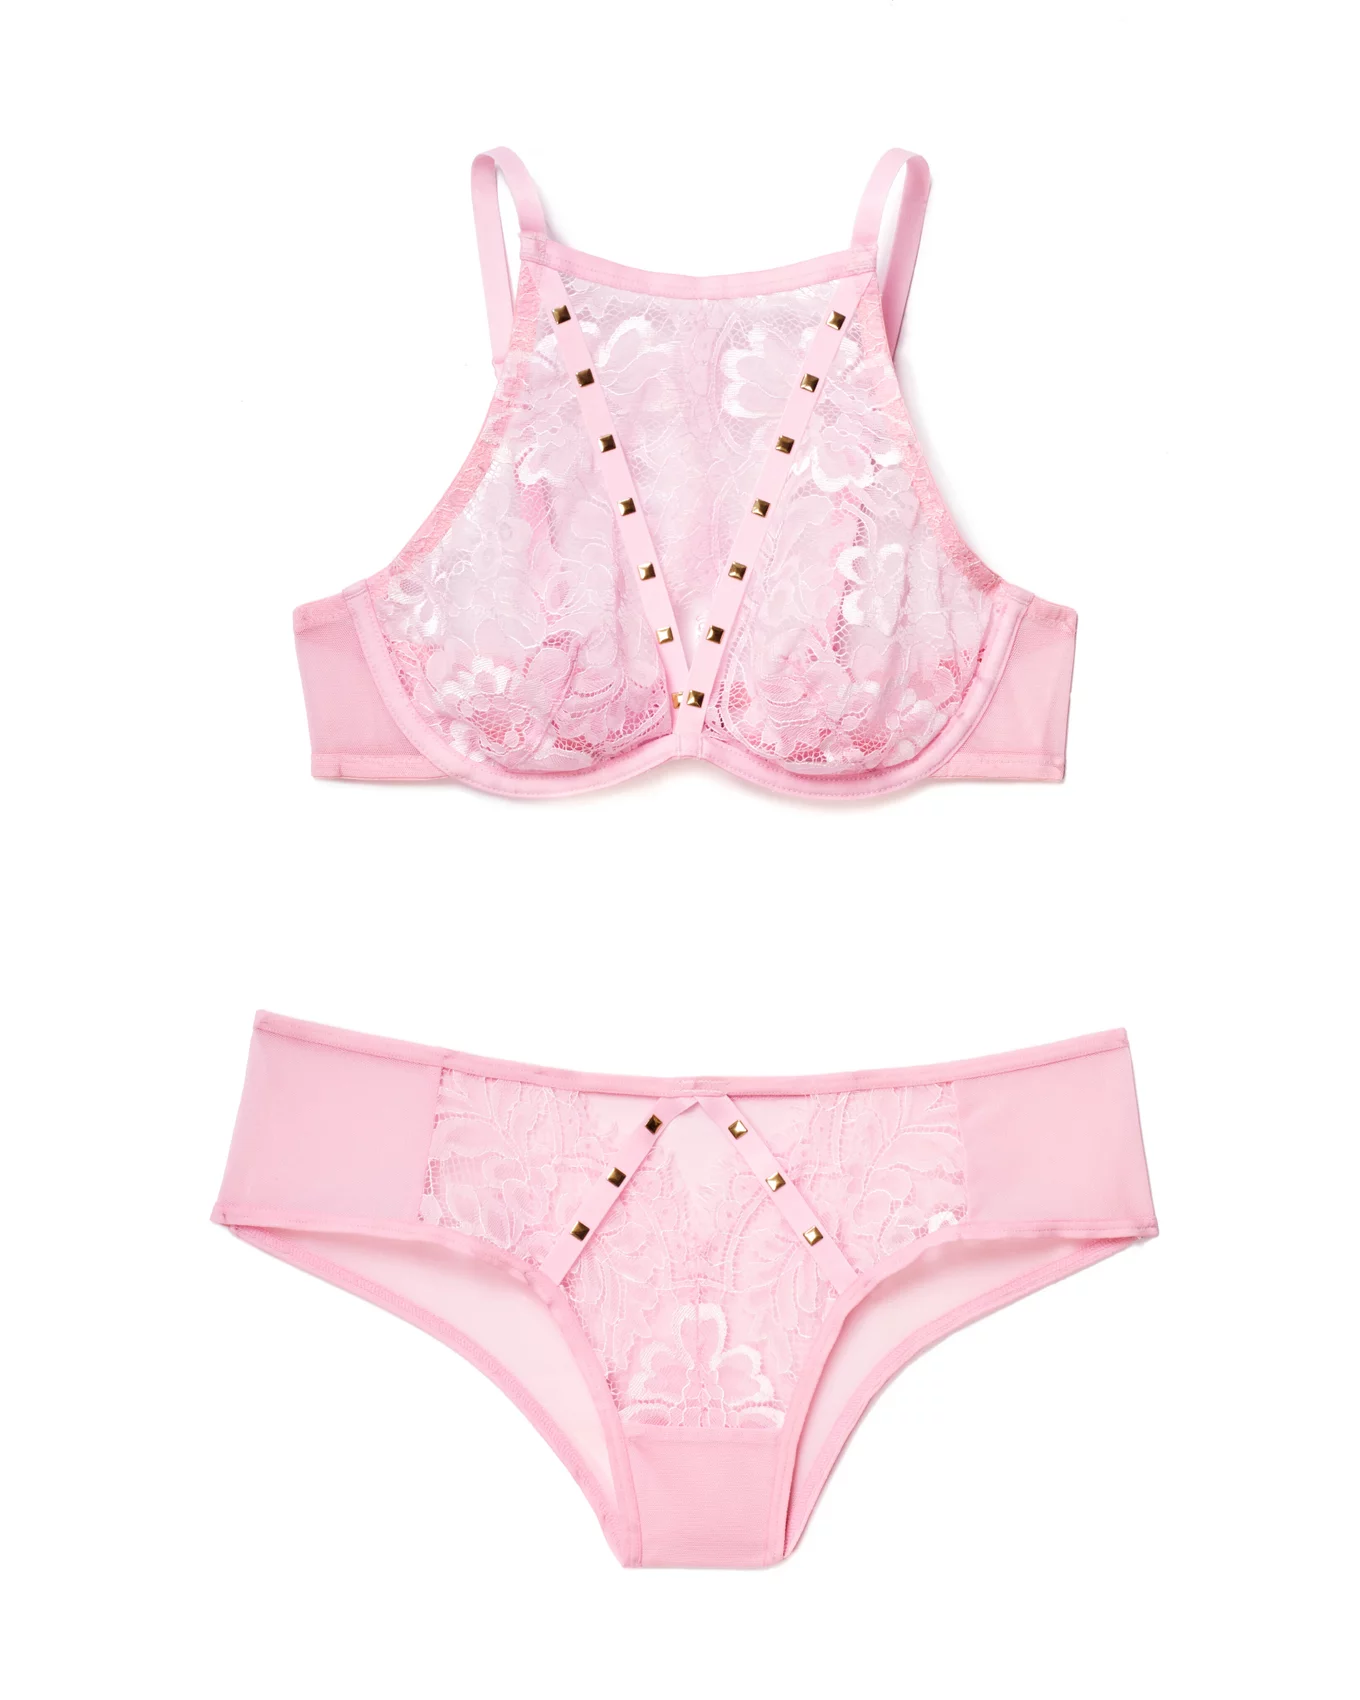 Victoria Secret Bra 38DDD Unlined Demi Pink Stars Sheer Lace